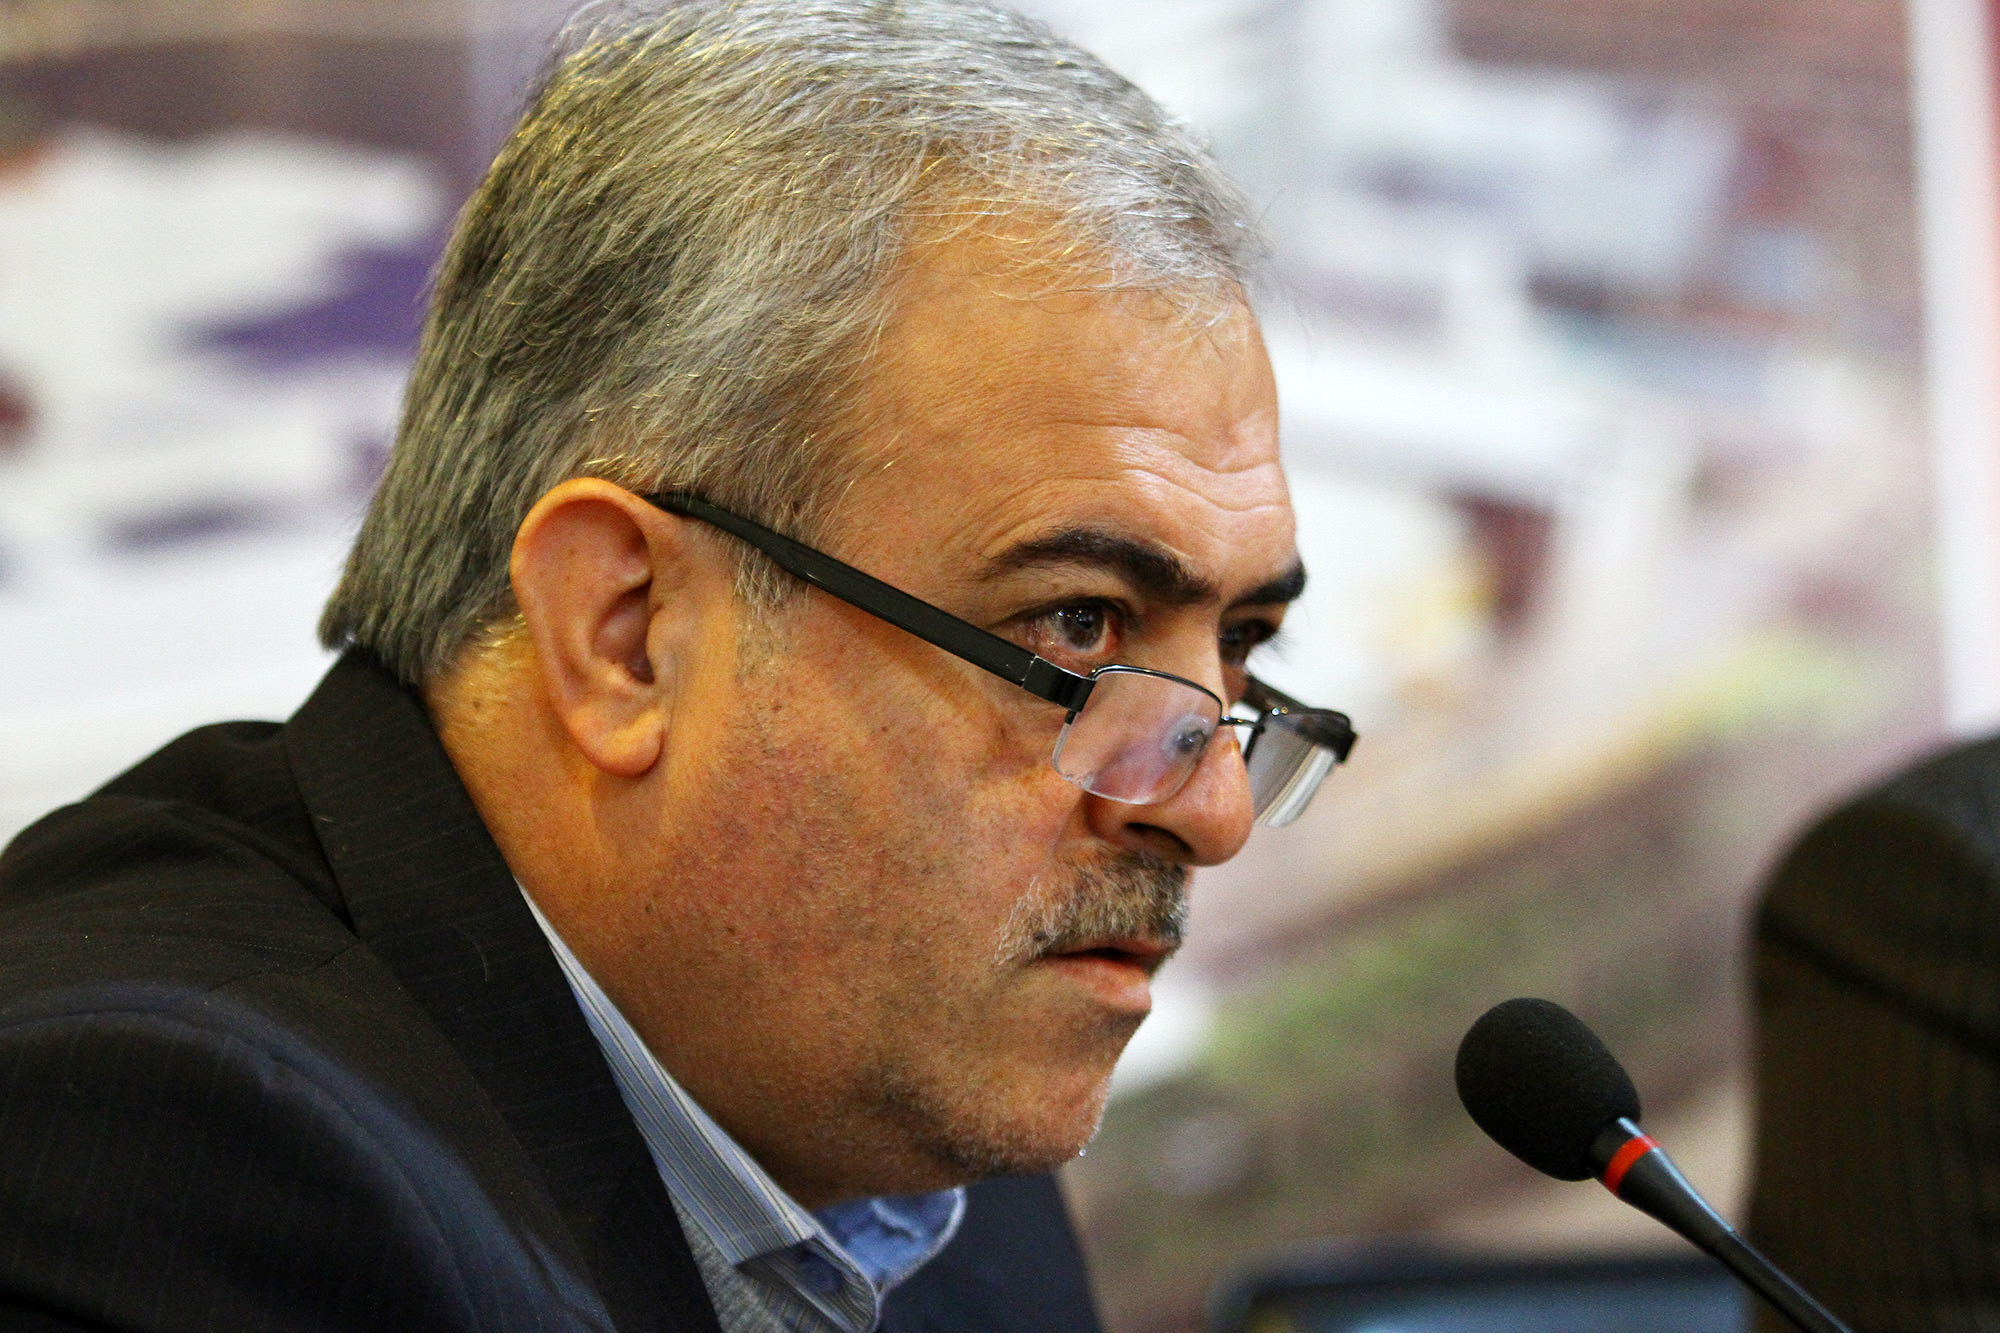 انعقاد قراردادهای با ترک تشریفات روند کاهشی داشته است/ انعقاد هزار و ۲۲۰ قرارداد عمرانی طی ۳ سال اخیر در شهرداری اصفهان